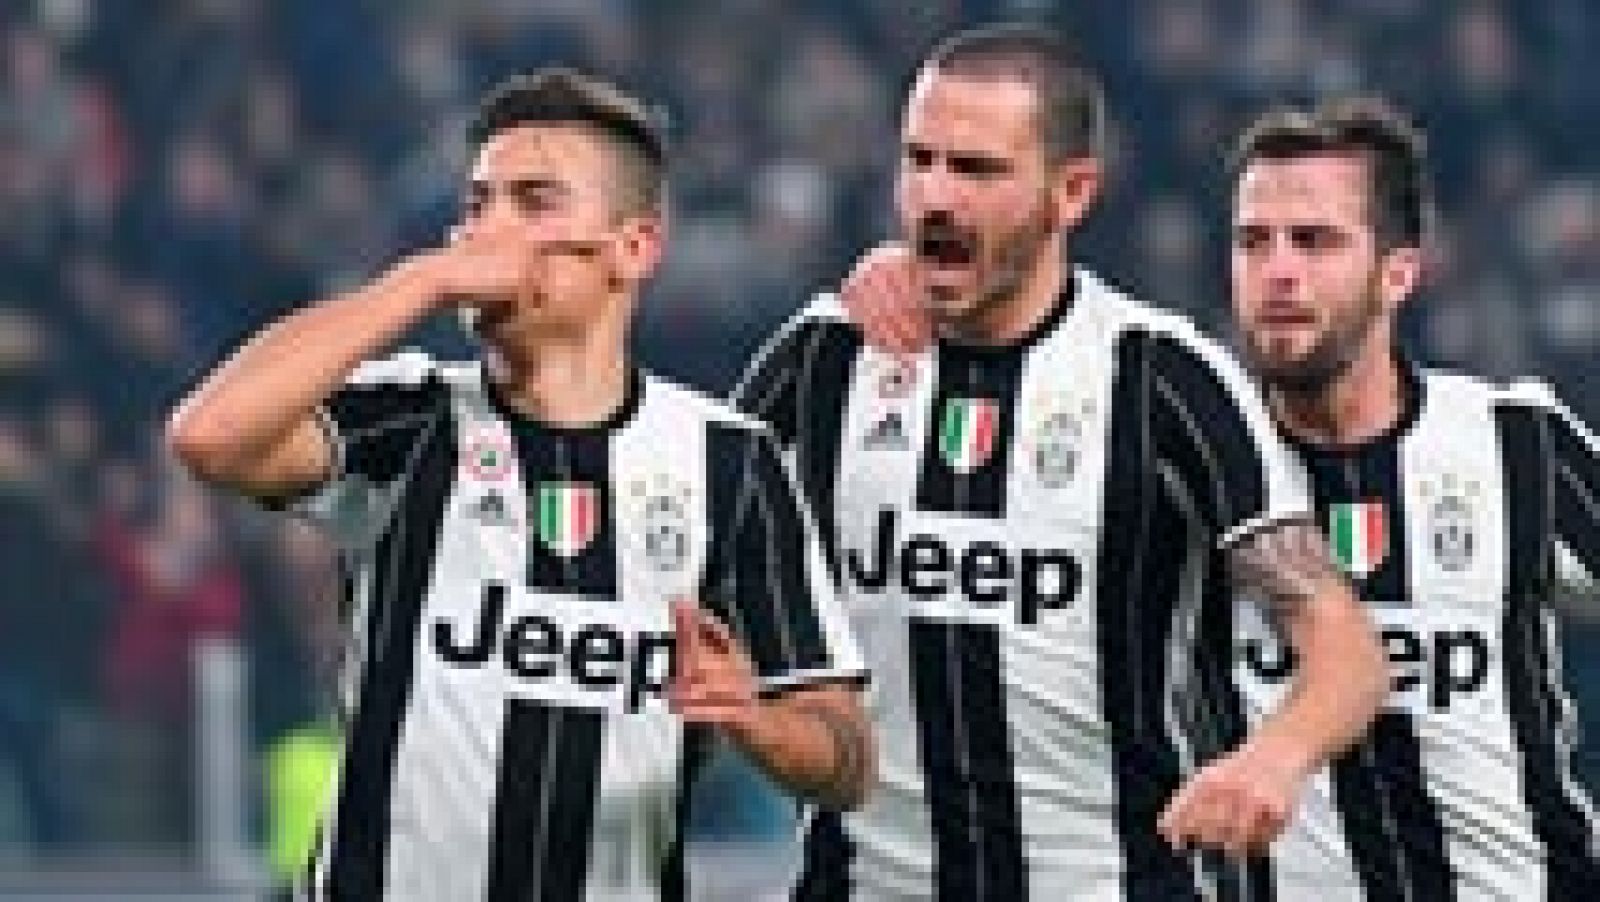 La Juventus de Turín remontó ante la SSC Nápoles (3-1) en el Juventus Stadium en la ida de las semifinales de la Copa de Italia tras sobreponerse a un gol de Callejón gracias a dos penaltis de Dybala y un tanto de Higuaín, dejando así la eliminatoria encarrilada para la vuelta y avanzando así hacia su tercera Copa de Italia consecutiva.